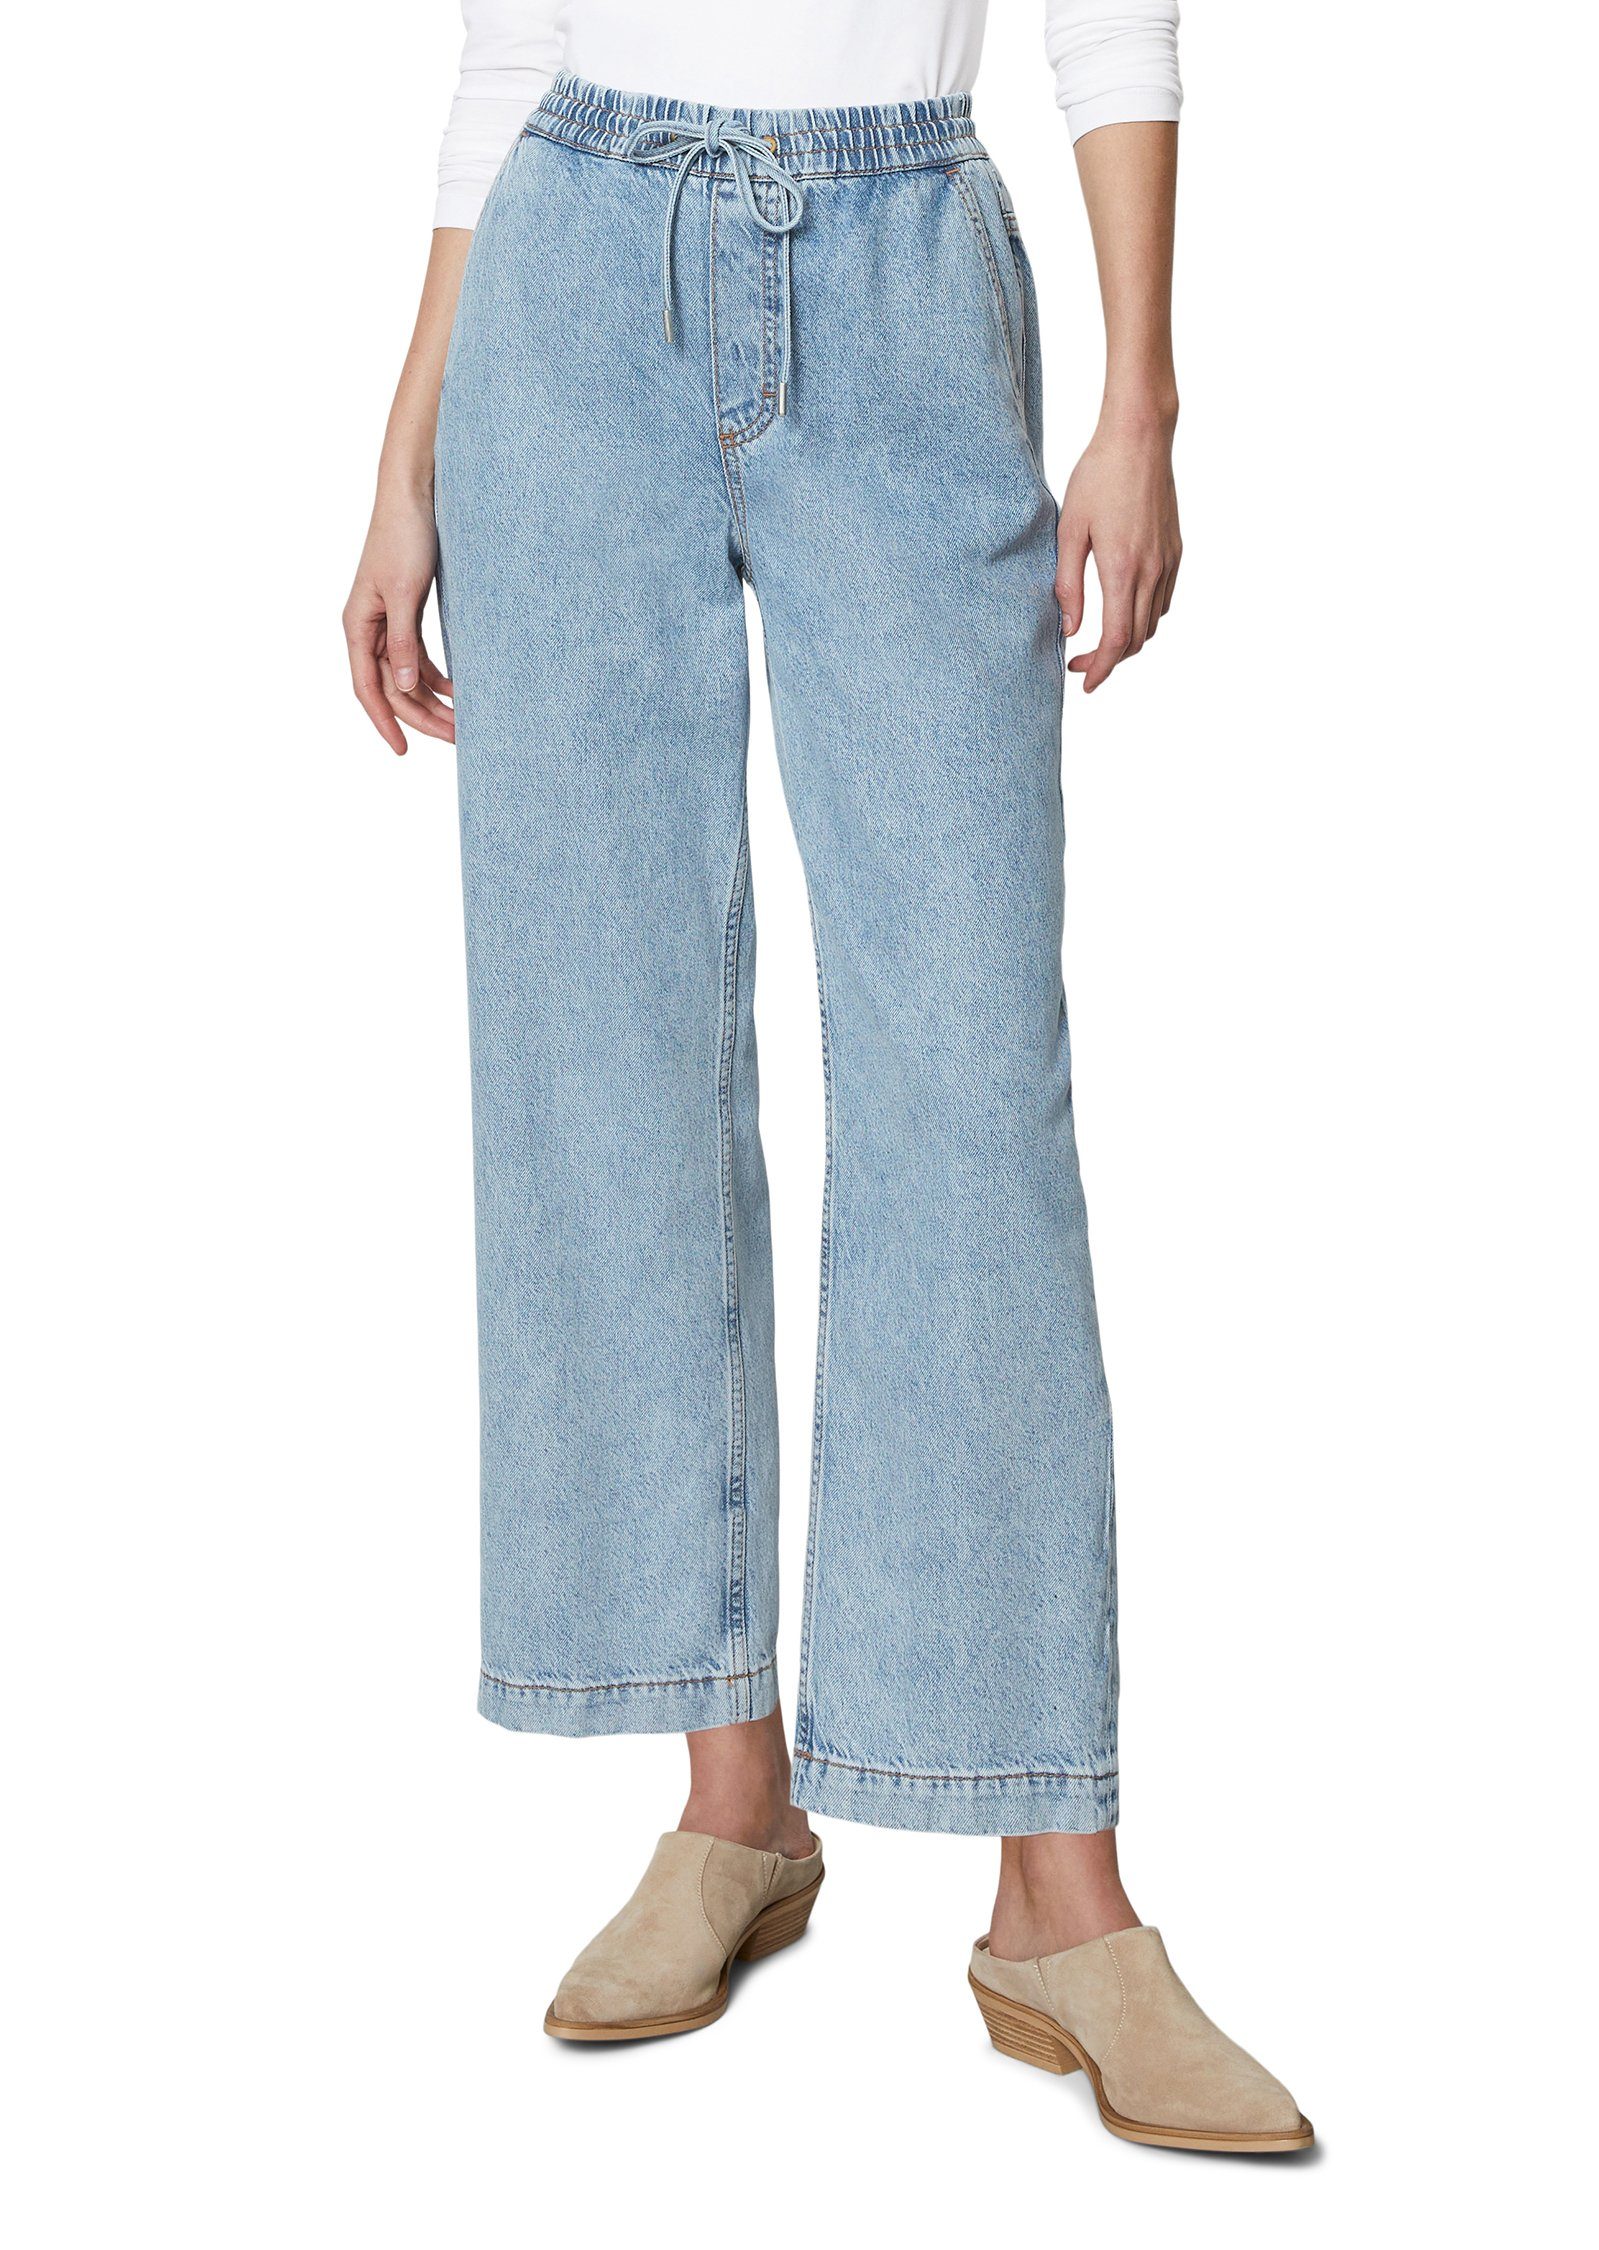 Marc O'Polo 7/8-Jeans mit elastischem Bündchen